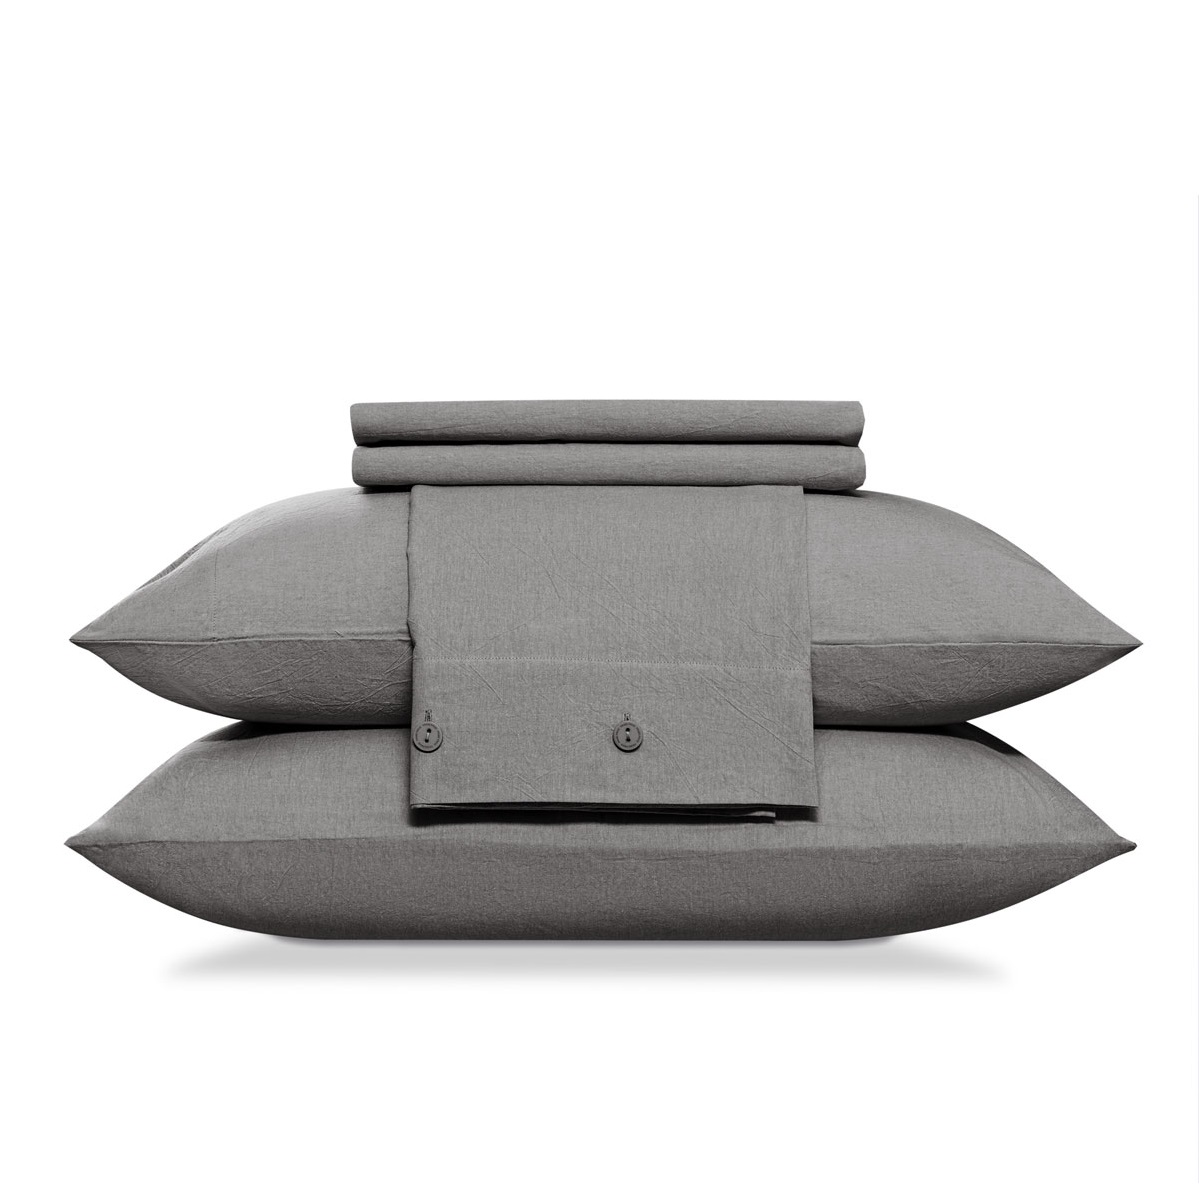 Комплект постельного белья Prime Prive Смоген Двуспальный кинг сайз тёмно-серый, размер Кинг сайз - фото 14